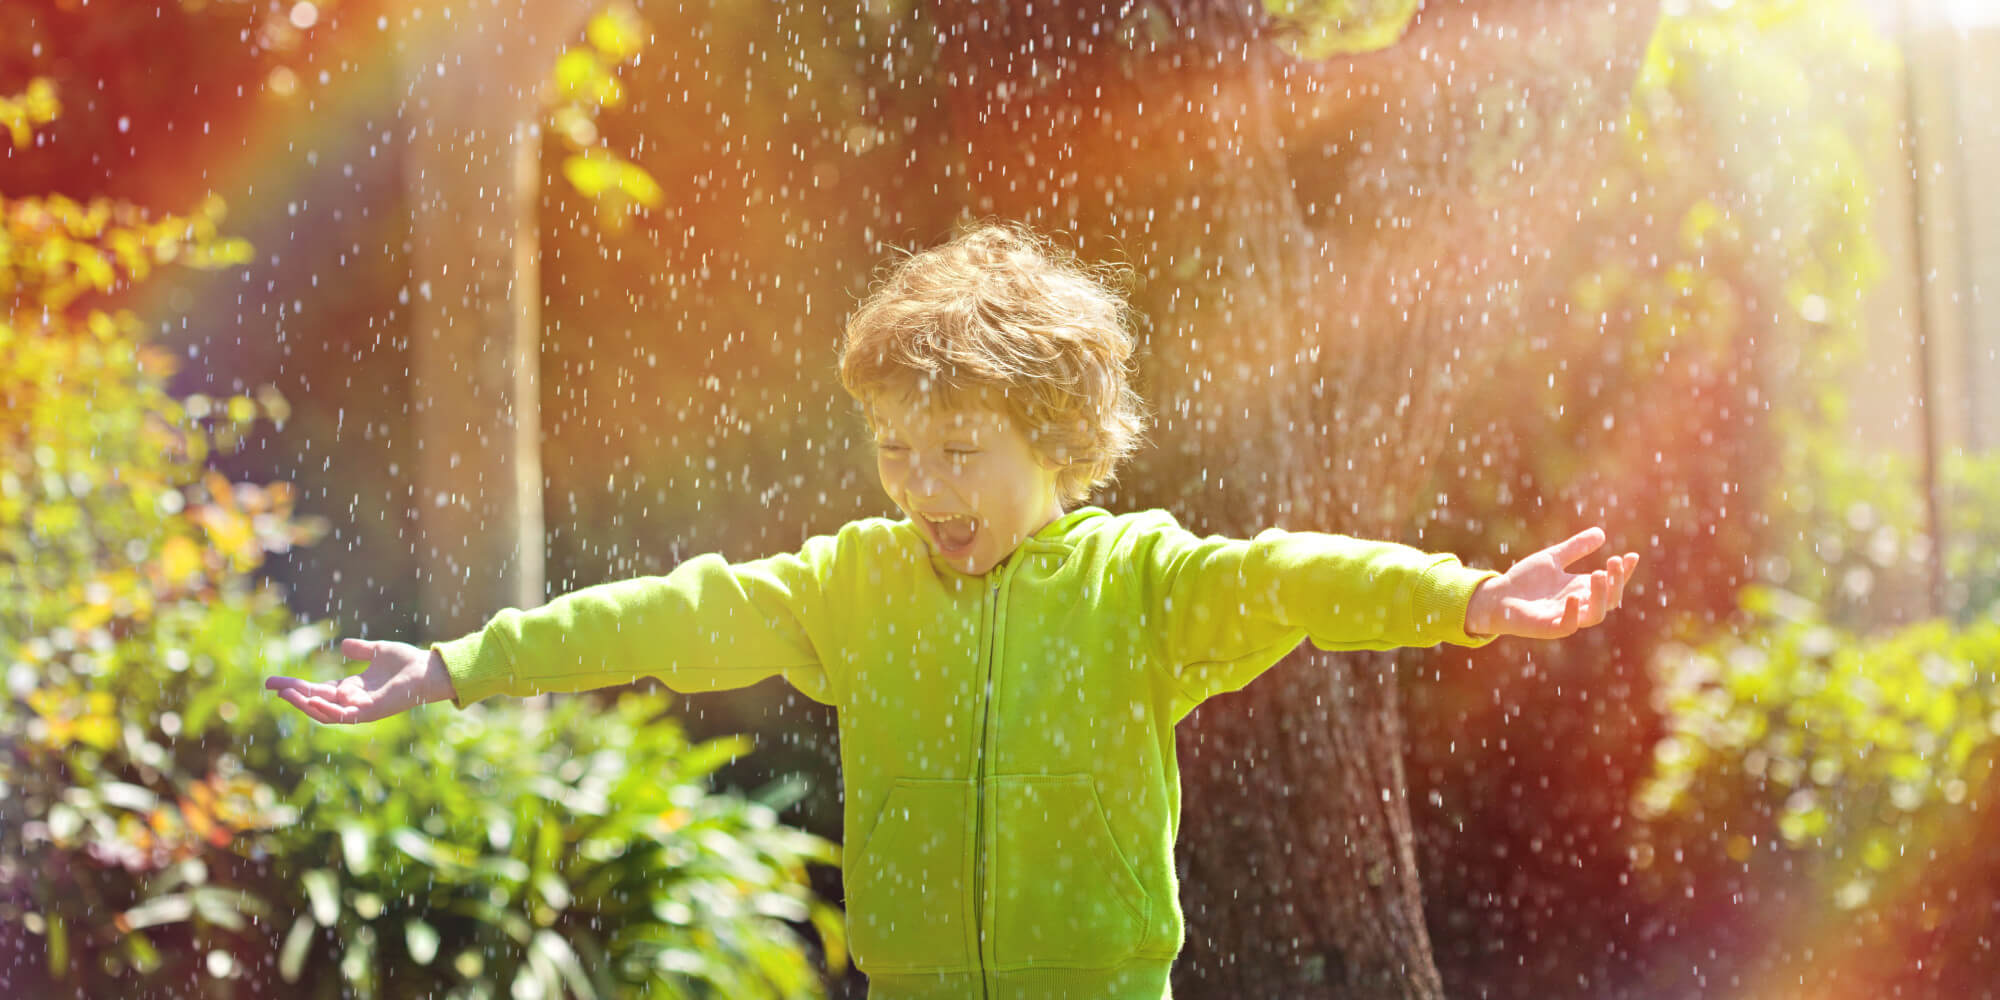 Солнечный луч солнечный дождик. Дождь и солнце. Дети радуются. Солнечный дождь. Дети солнца и дождя.